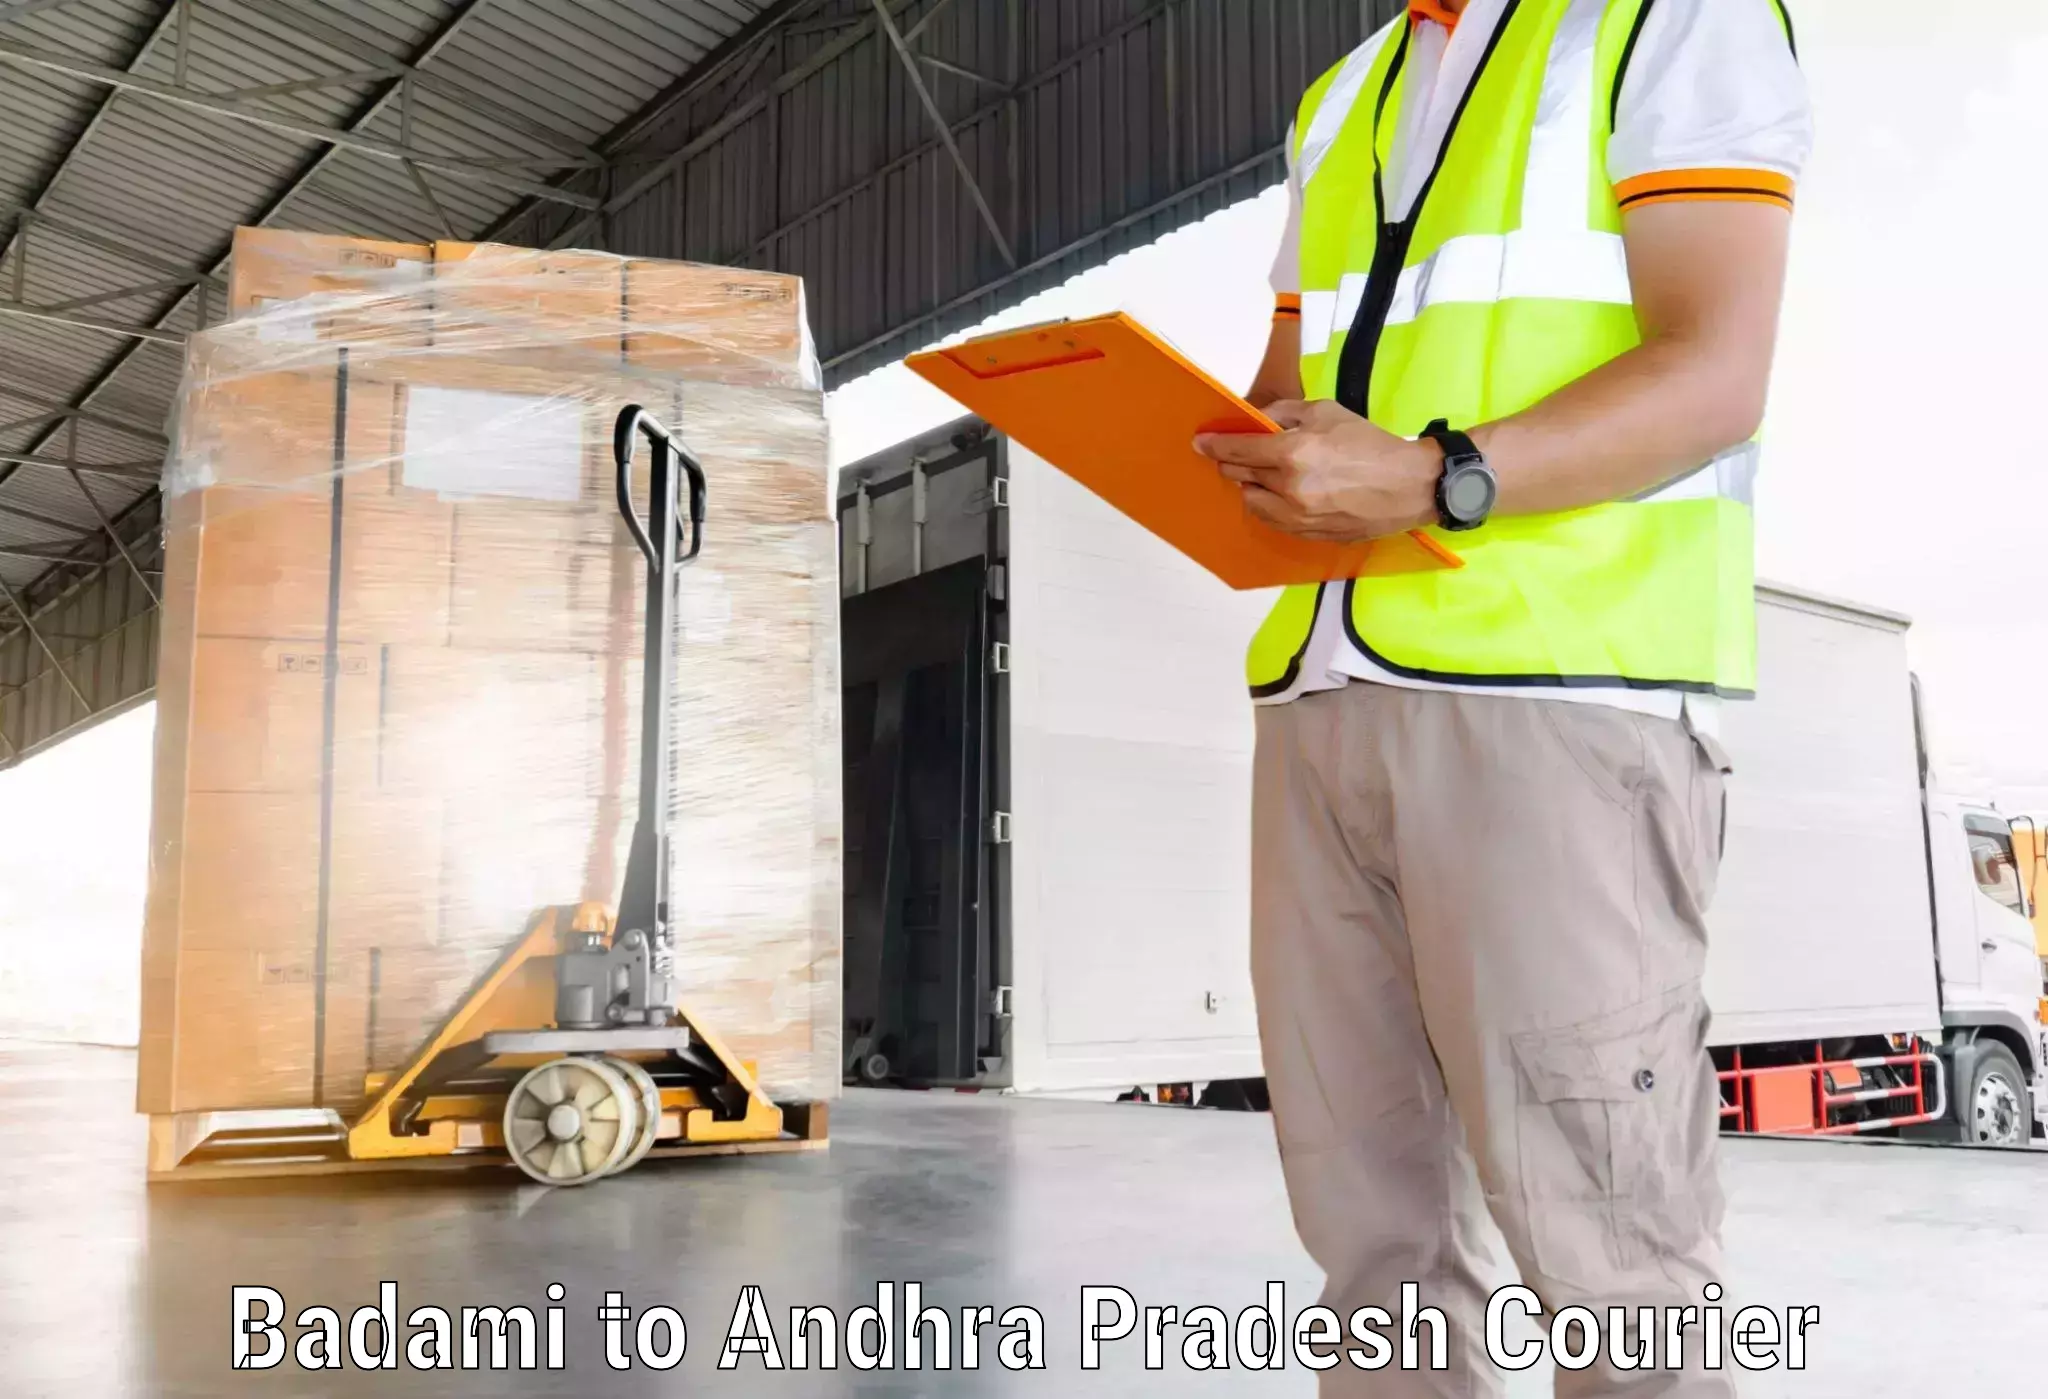 Supply chain efficiency Badami to Malikipuram